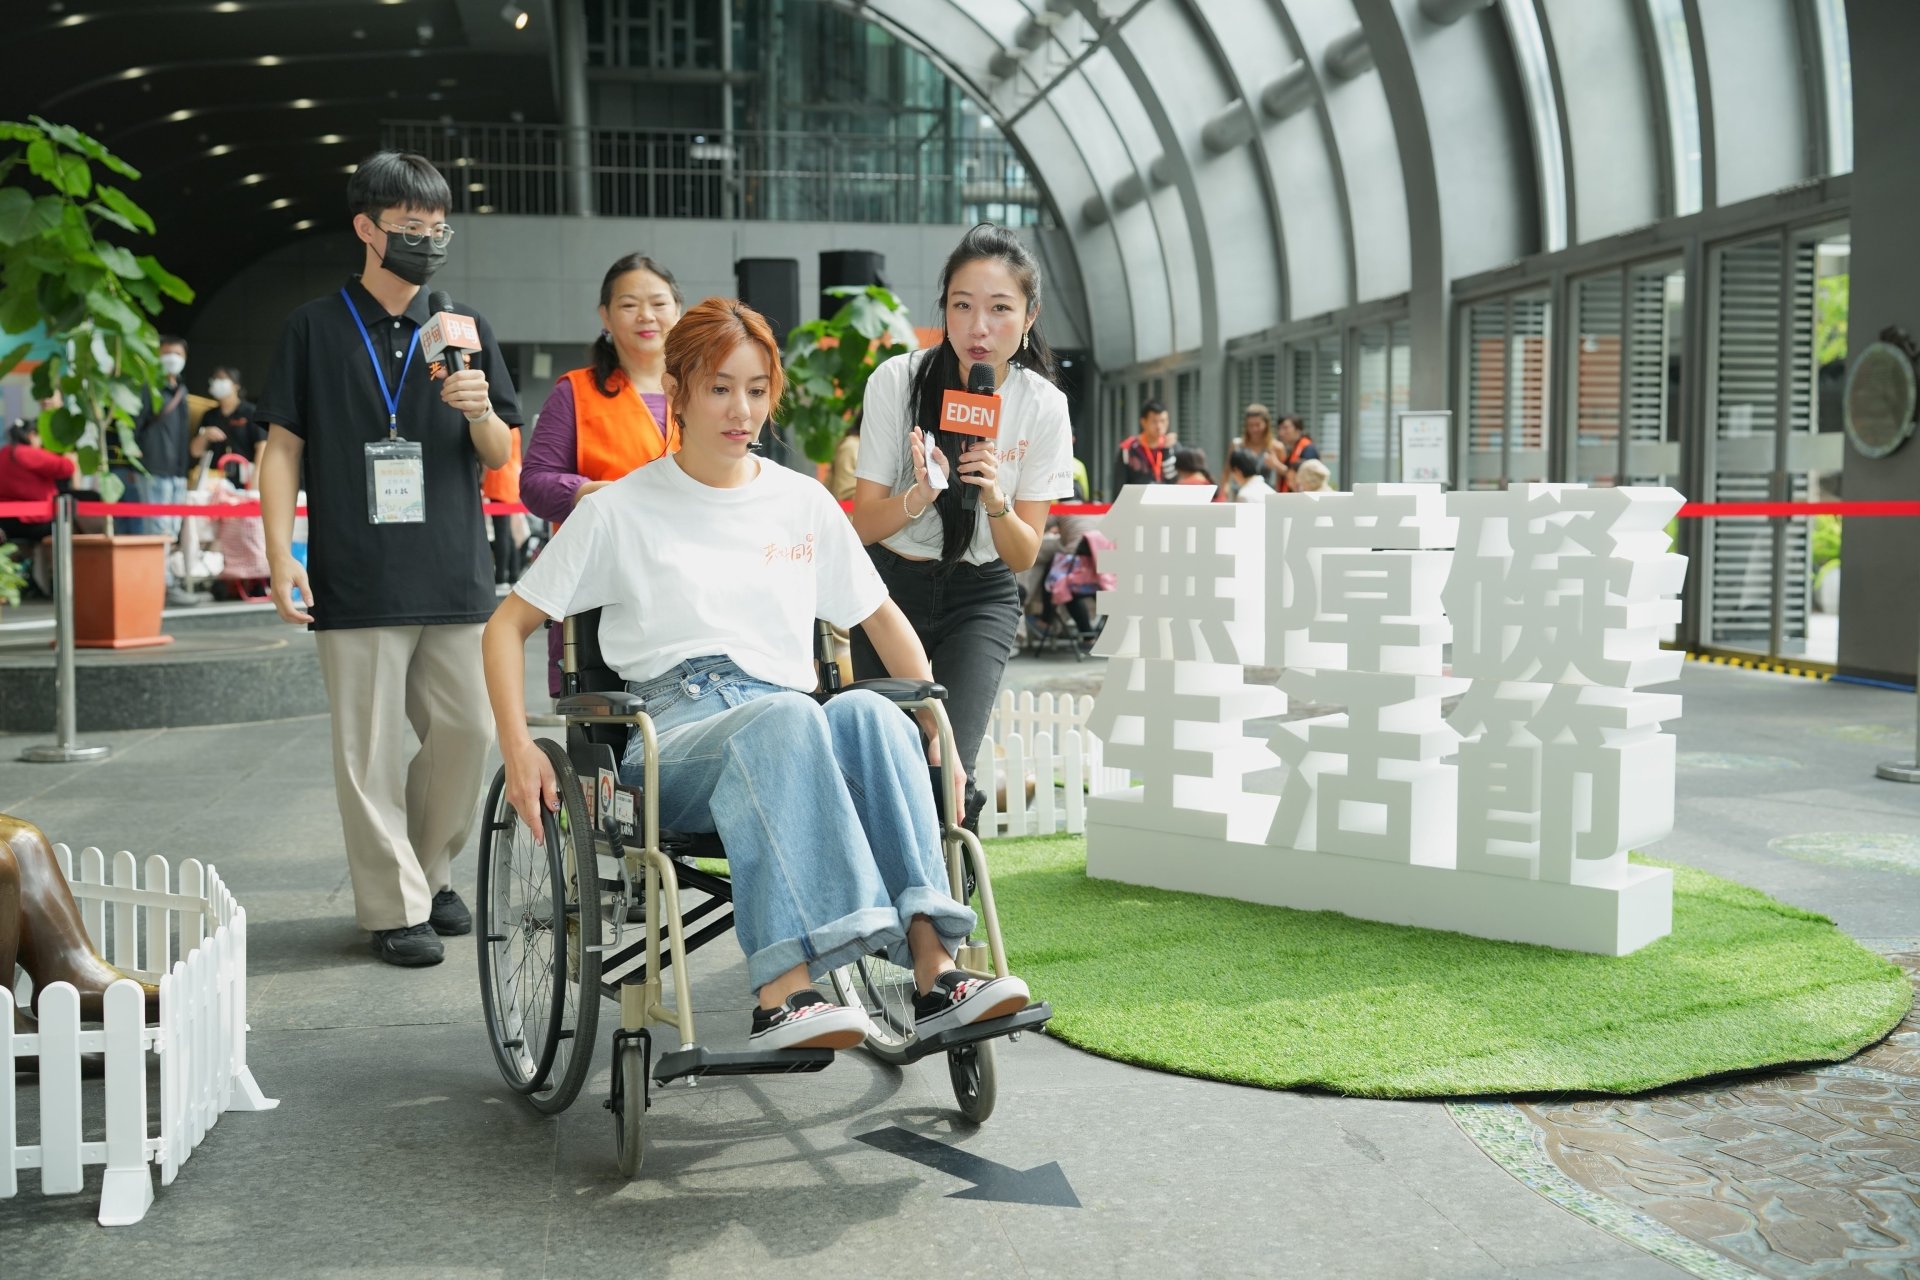 莎莎首次坐上輪椅體驗100公分的世界，感受輪椅族每天會面臨的挑戰與困境。